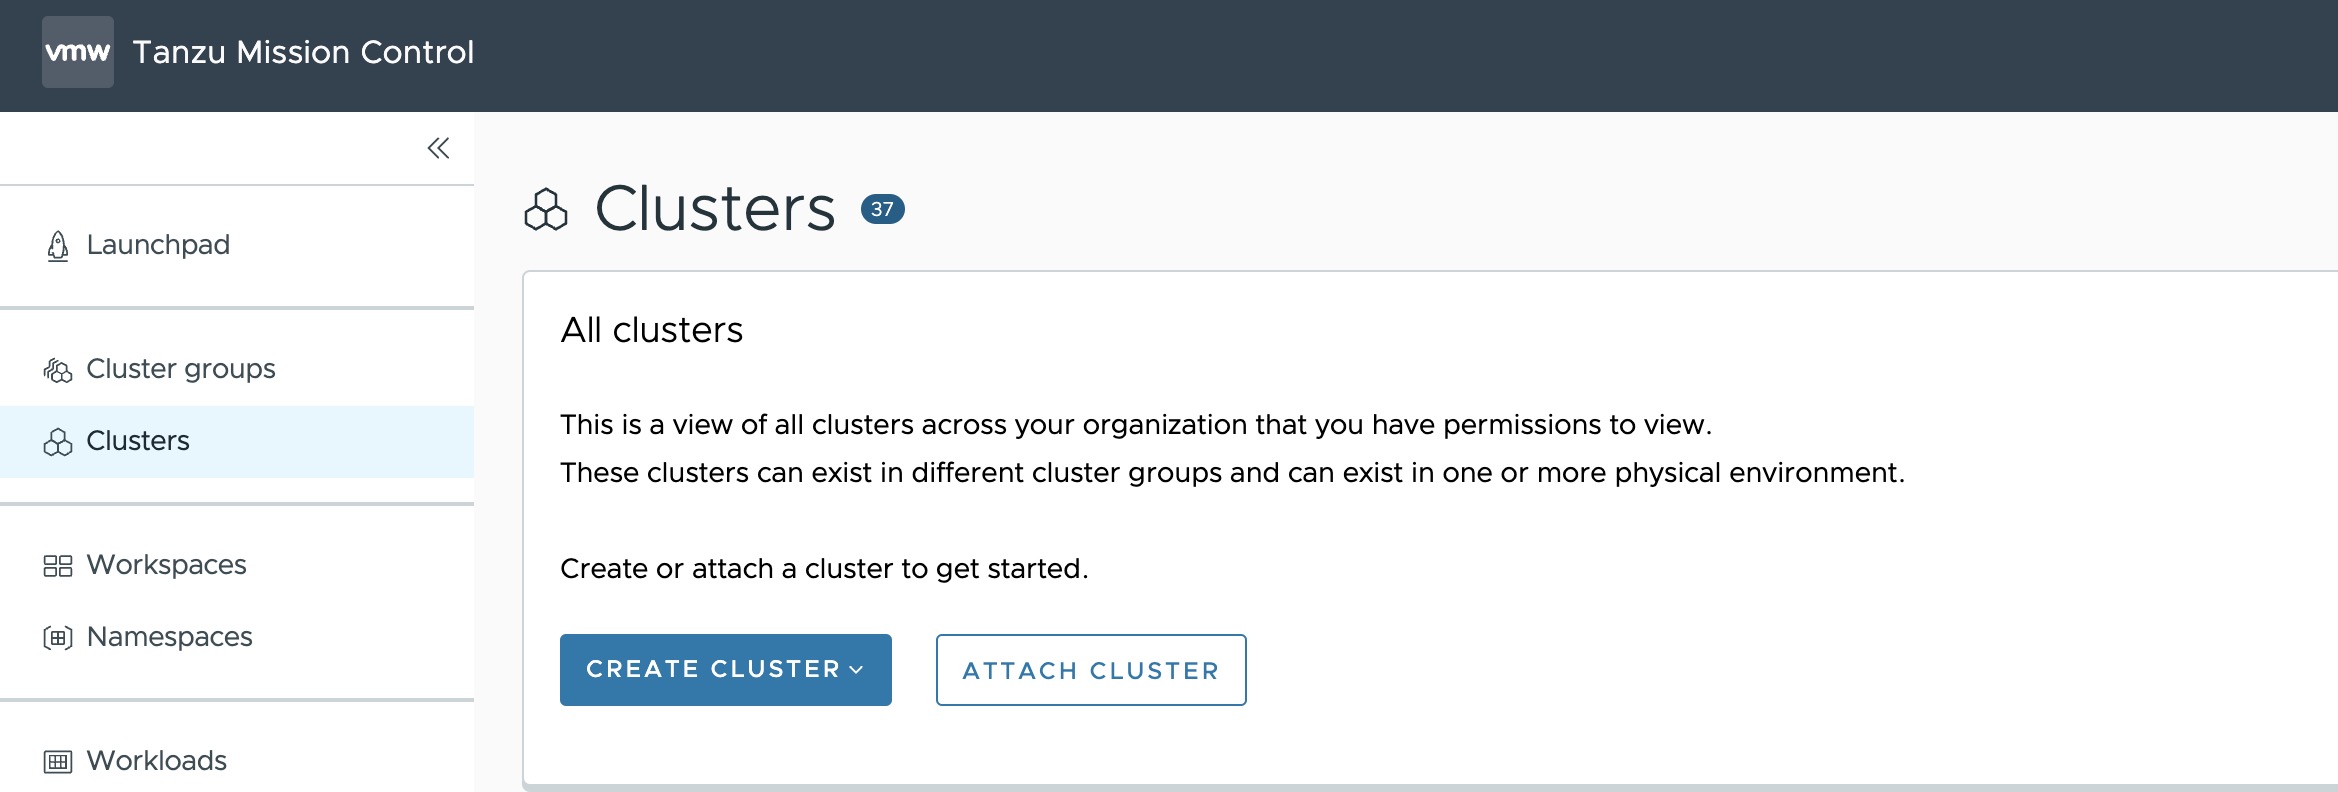 Clusters tab